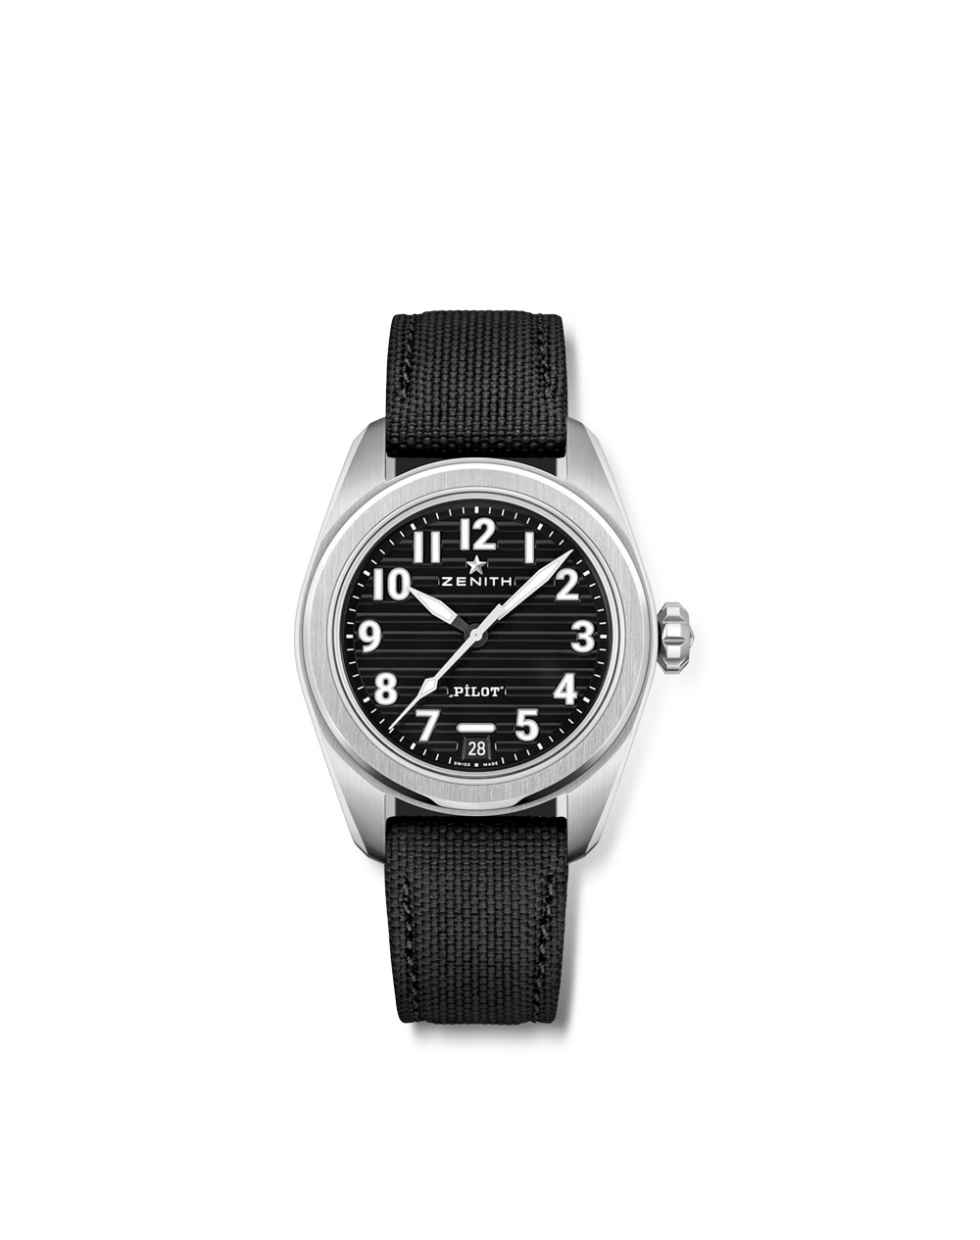 Montre Zenith Pilot Automatic cadran noir bracelet caoutchouc noir 40 mm